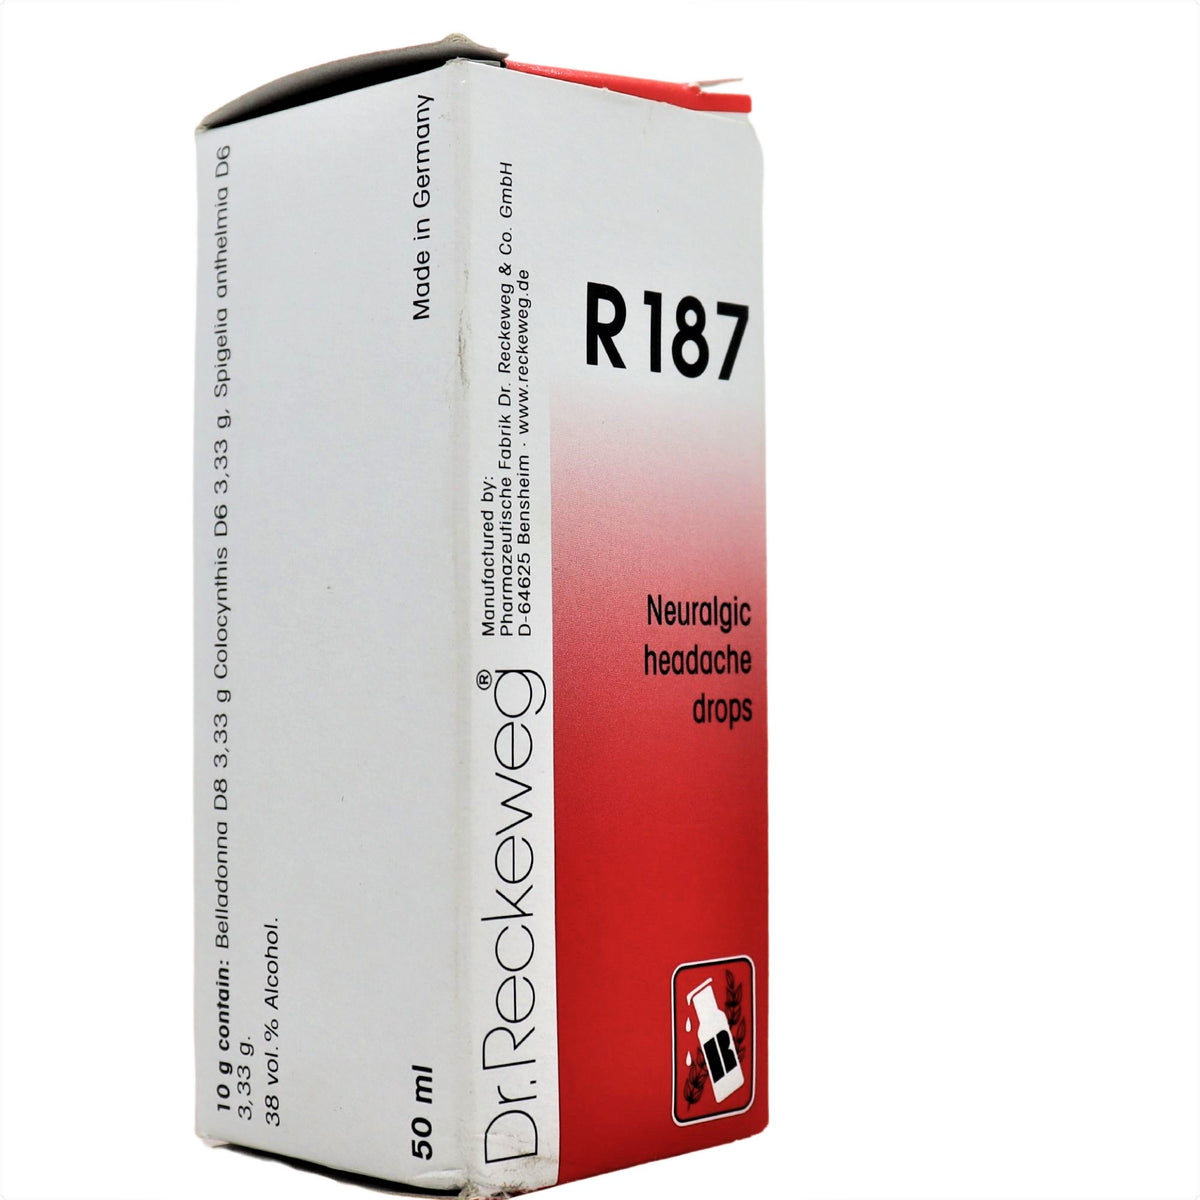 R-187 (Neuralgic headache Drops)